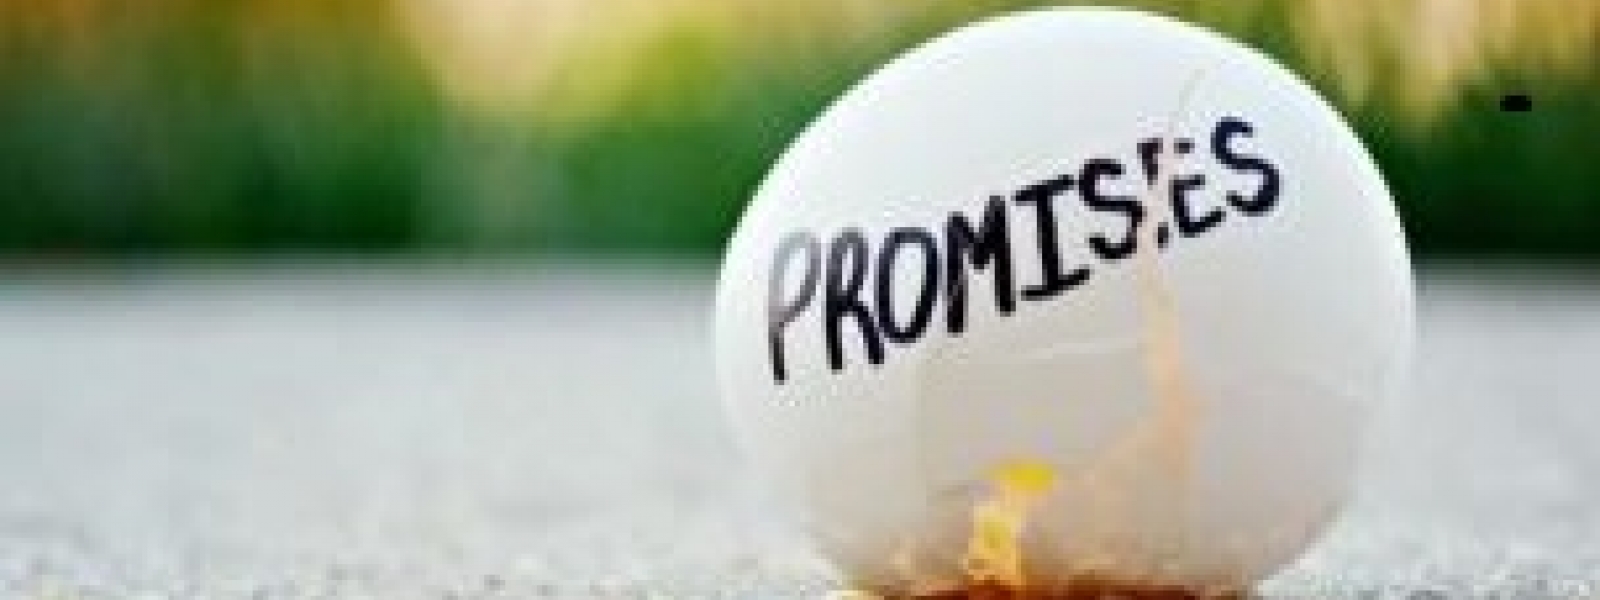 10622 broken promises